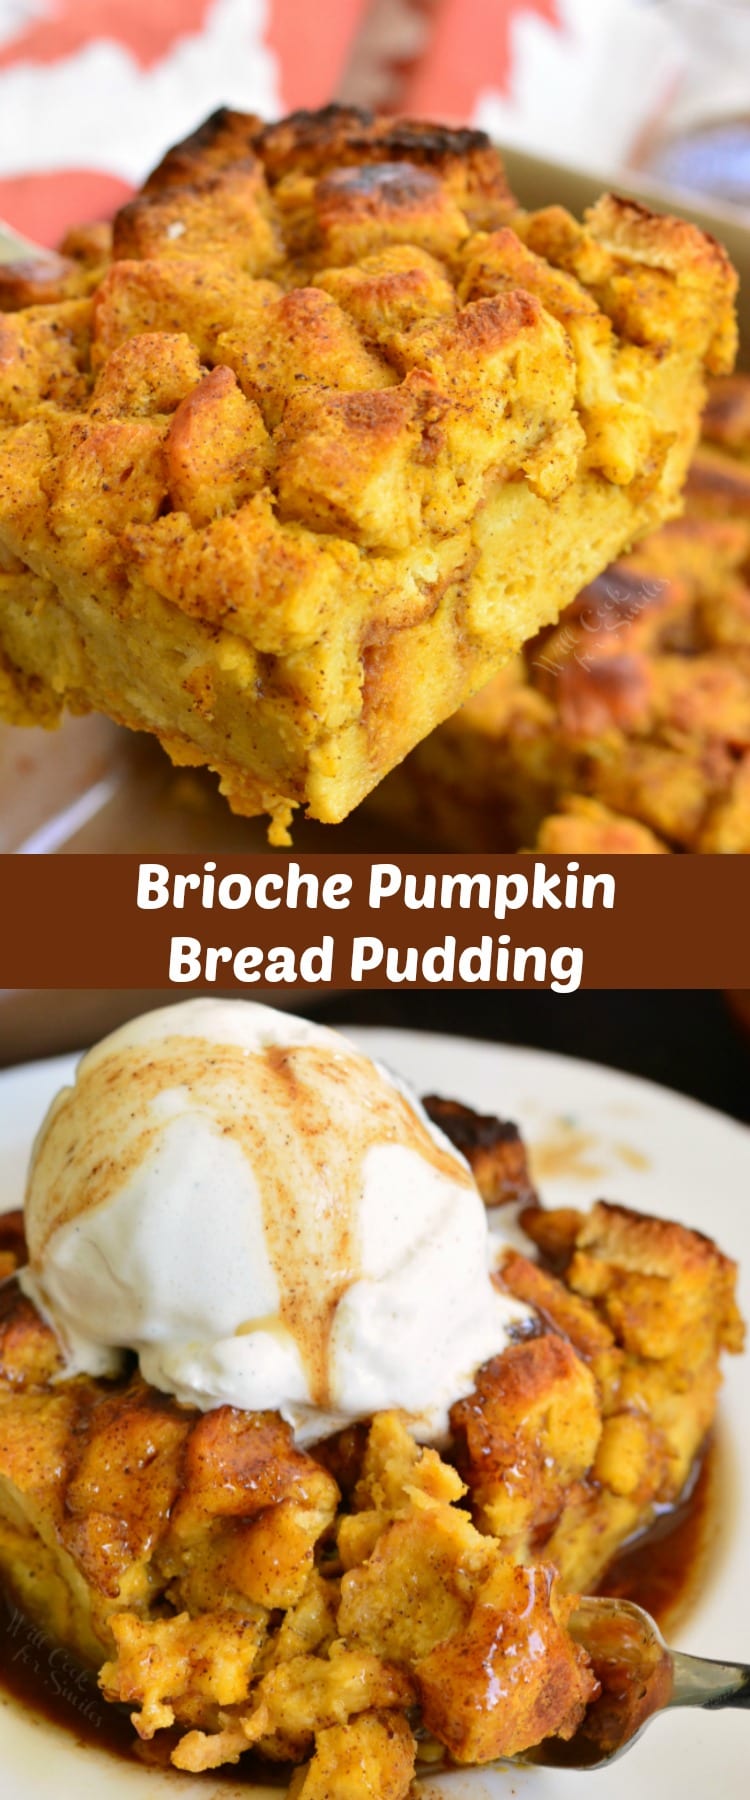 Brioche Pumpkin Bread Pudding collage 